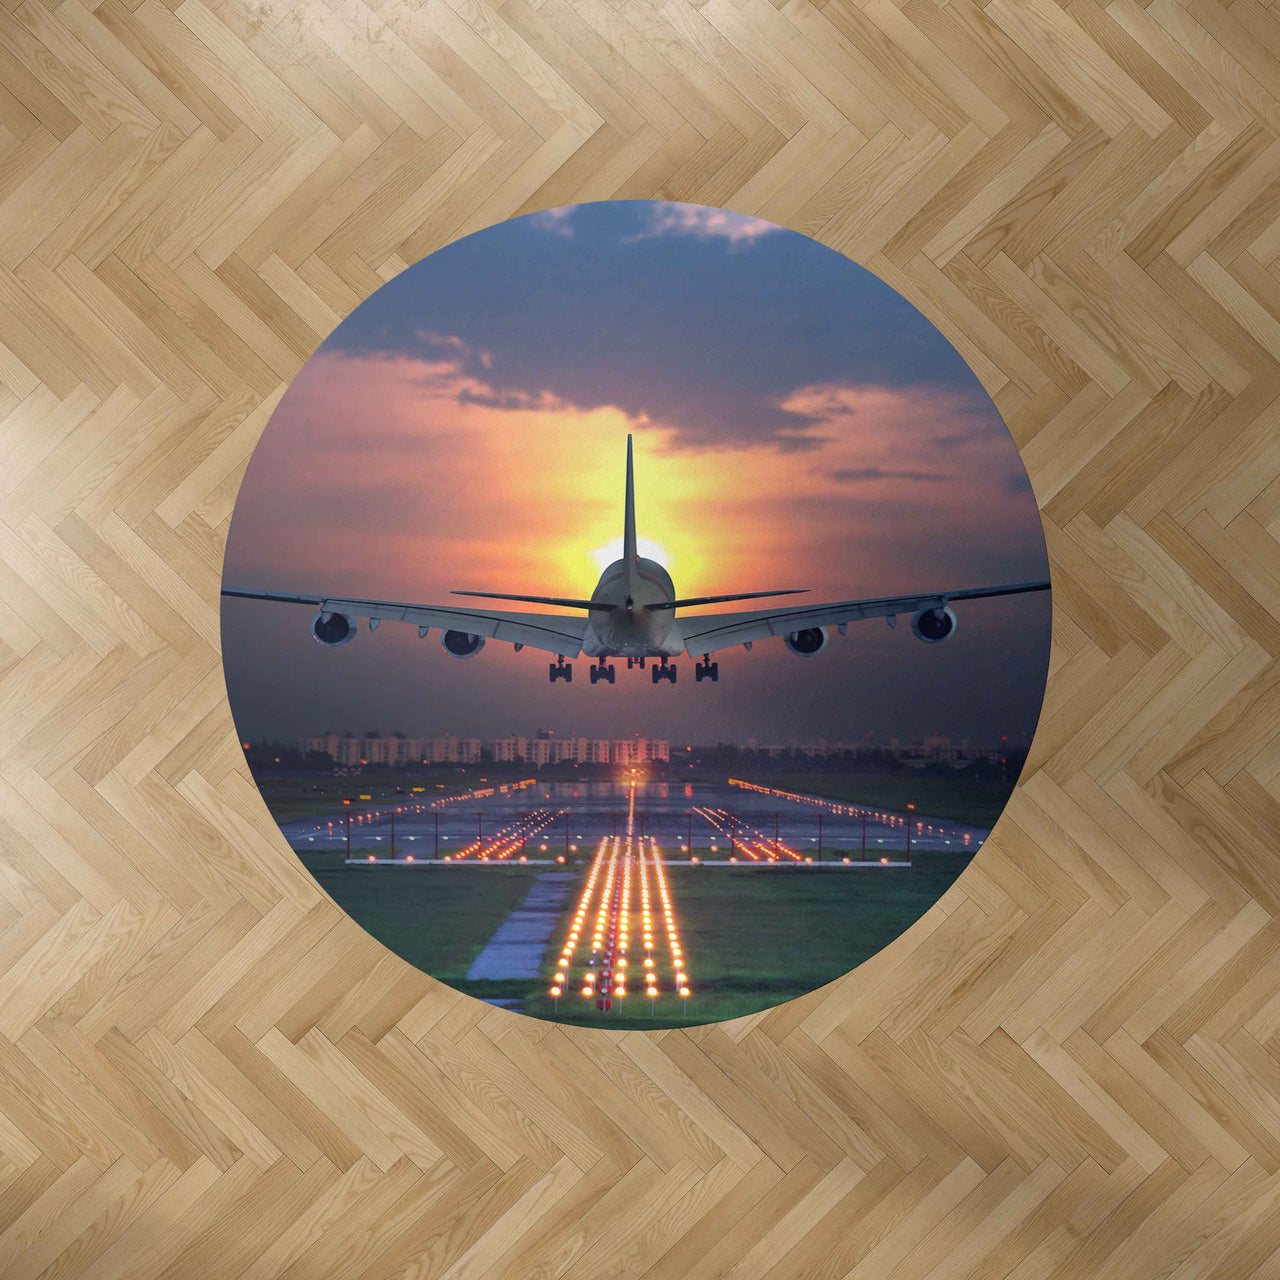 Super Airbus A380 Landing During Sunset Designed Carpet & Floor Mats (Round)